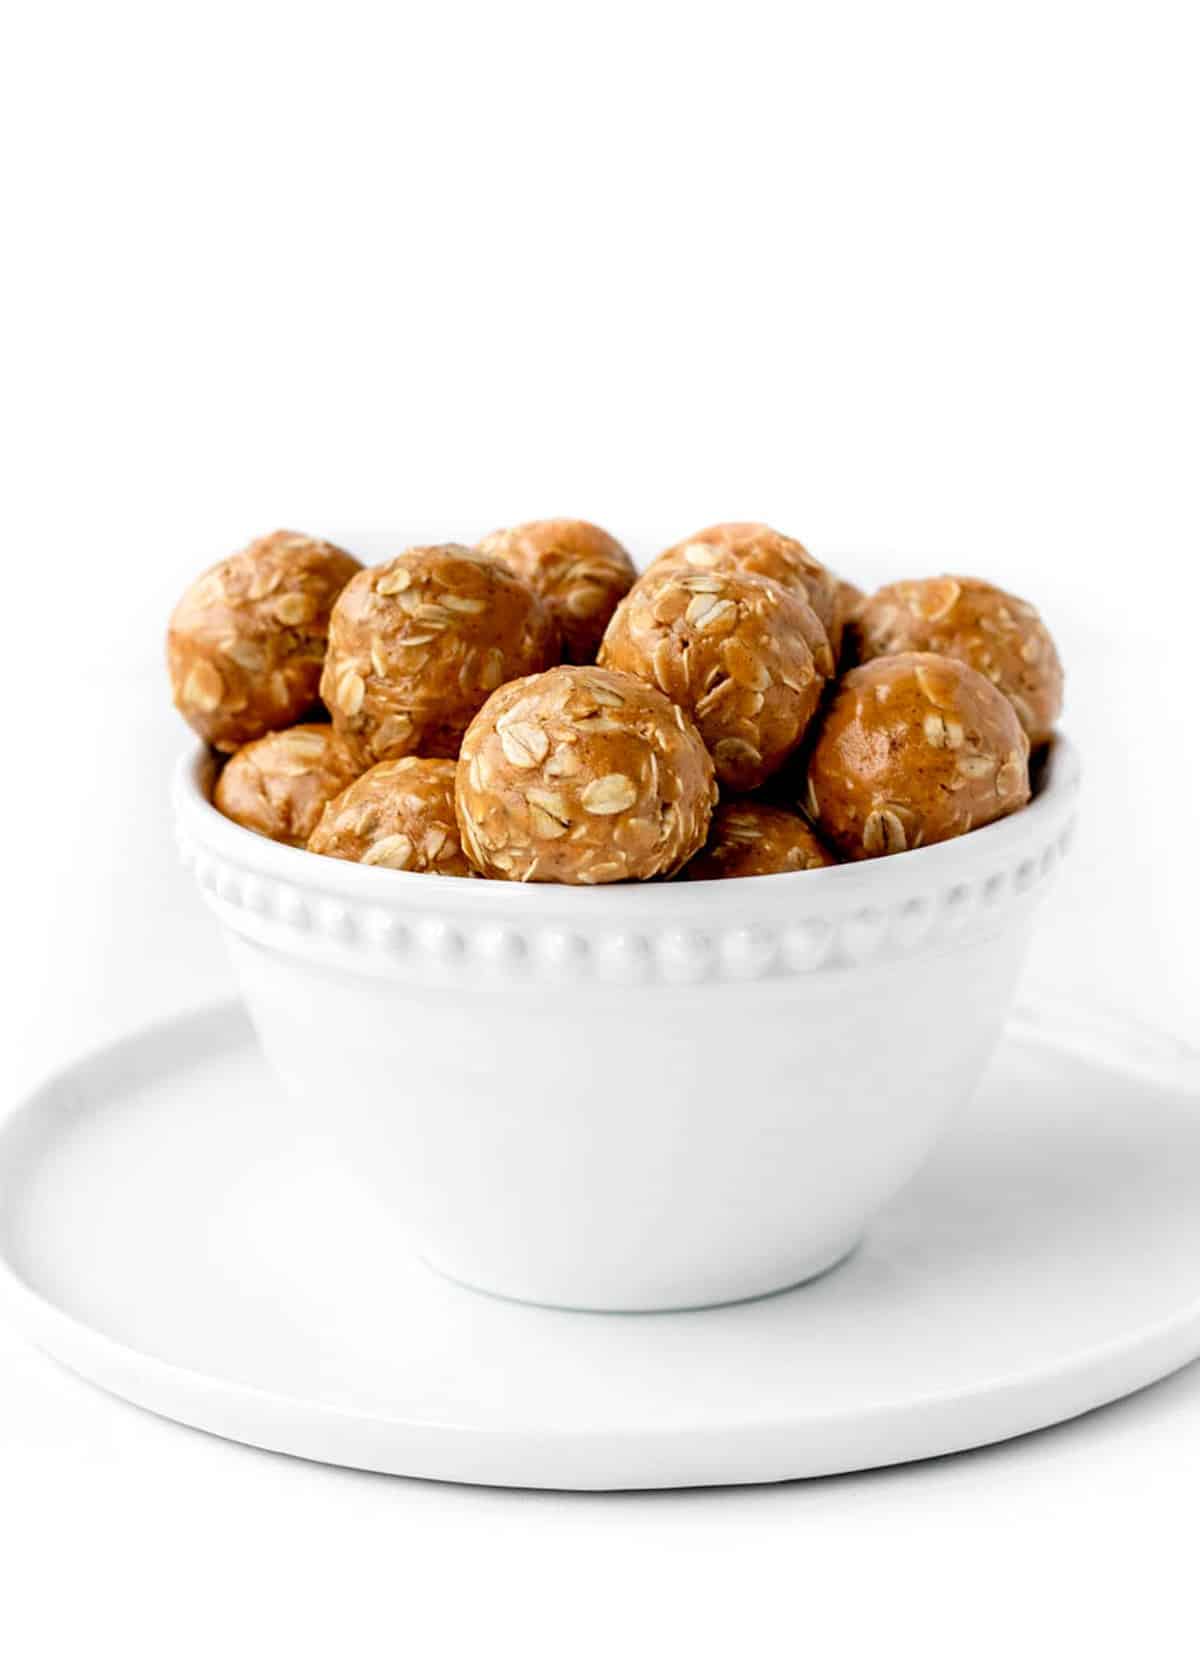 peanut butter oatmeal balls